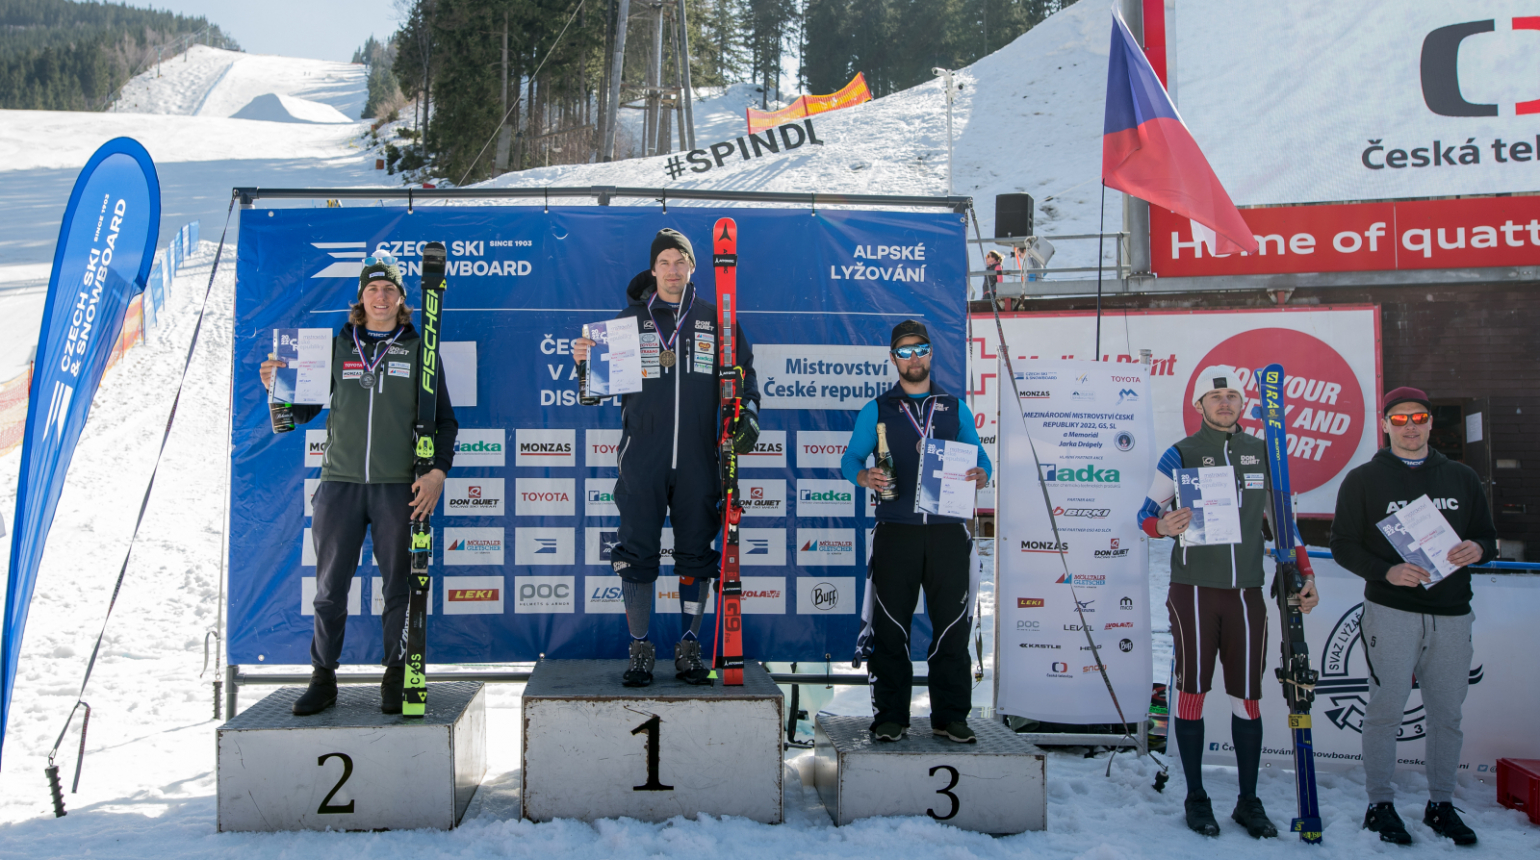 Obří slalom na MČR: Krýzl získal osmnáctý republikový titul, mezi ženami se radovala Capová. Pauláthová se rozloučila s kariérou